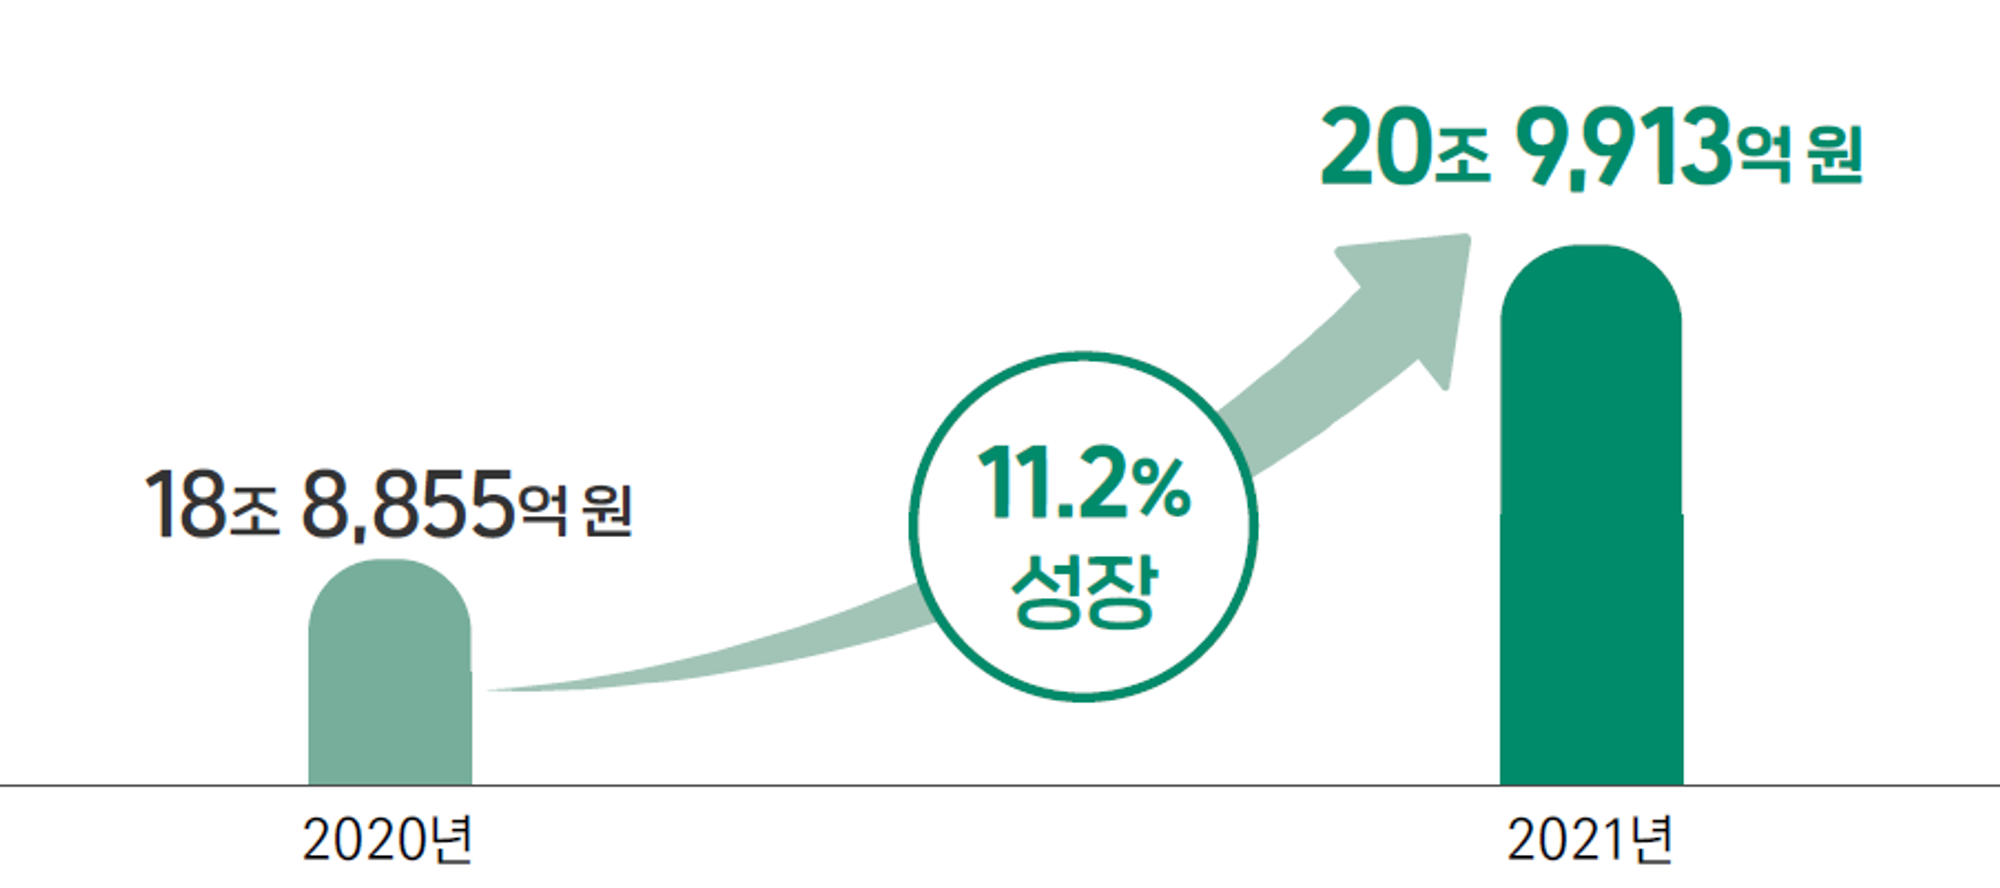 한국에서 게임 업계는 지속적으로 성장하는 분야로, 가장 최근 조사 결과에서는 11.2% 성장률을 보였다. 